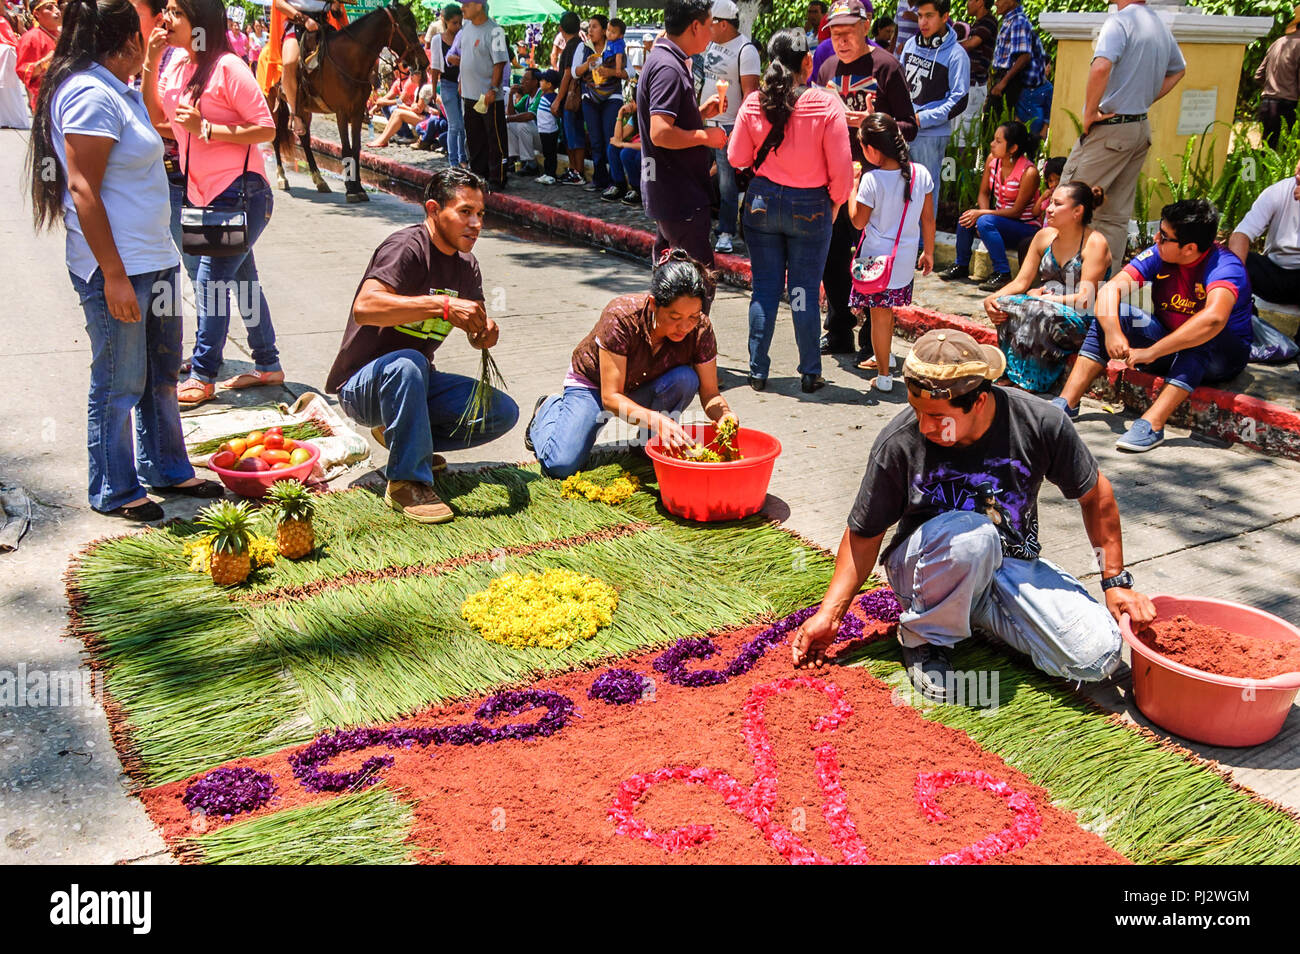 Antigua, Guatemala - 2 Avril, 2015 : Semaine Sainte en procession dans la ville coloniale de tapis avec la plupart des célébrations de la Semaine sainte célèbre en Amérique latine. Banque D'Images